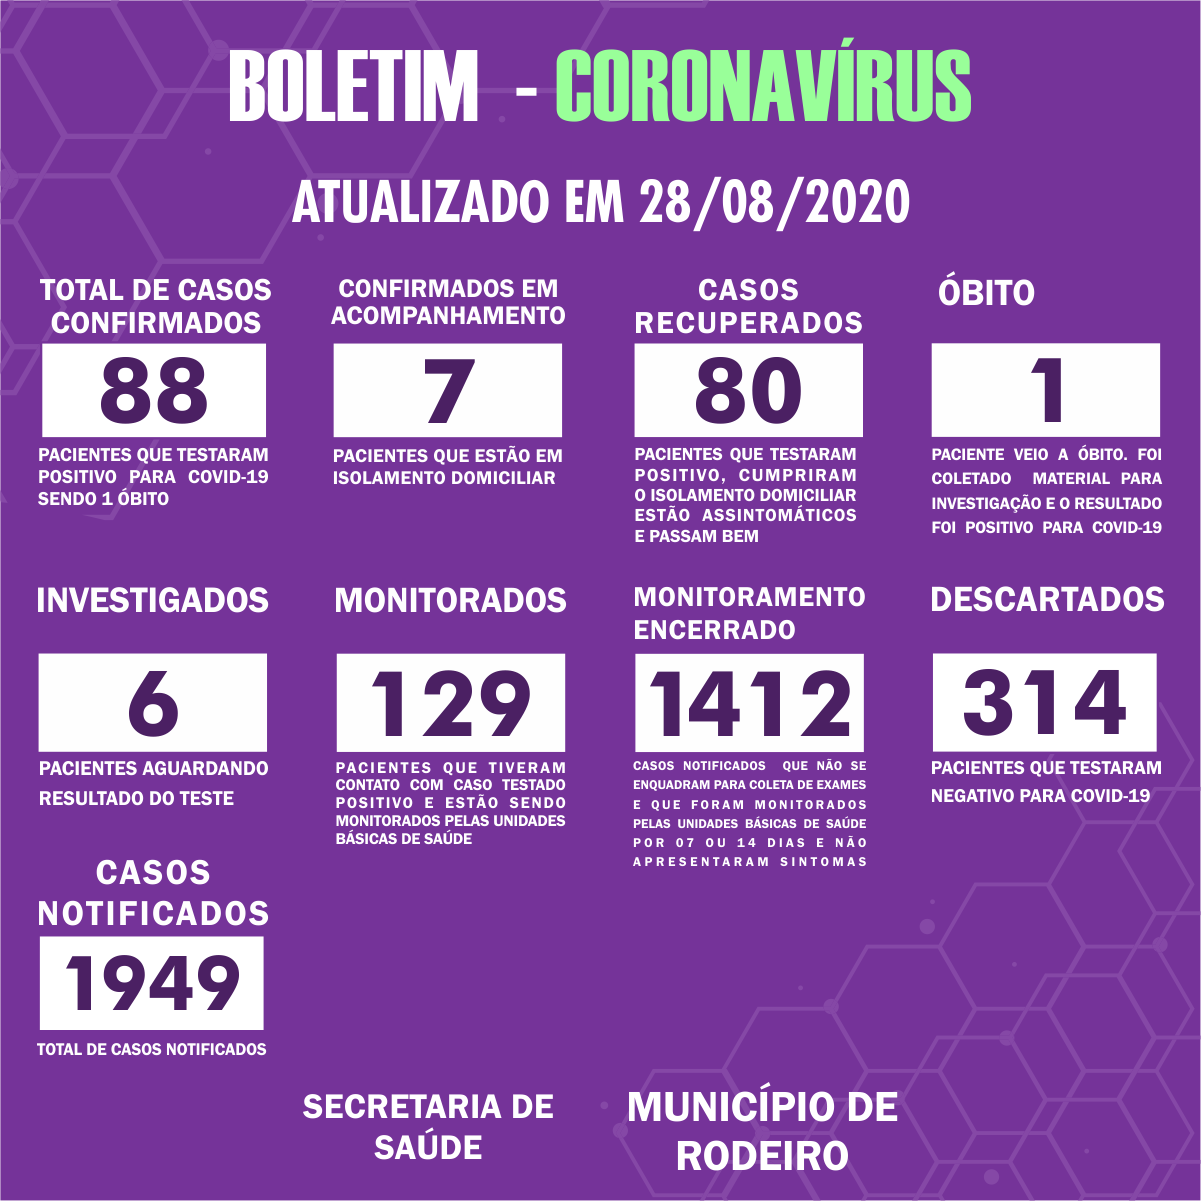 Boletim Epidemiológico do Município de Rodeiro sobre coronavírus, atualizado em 28/08/2020